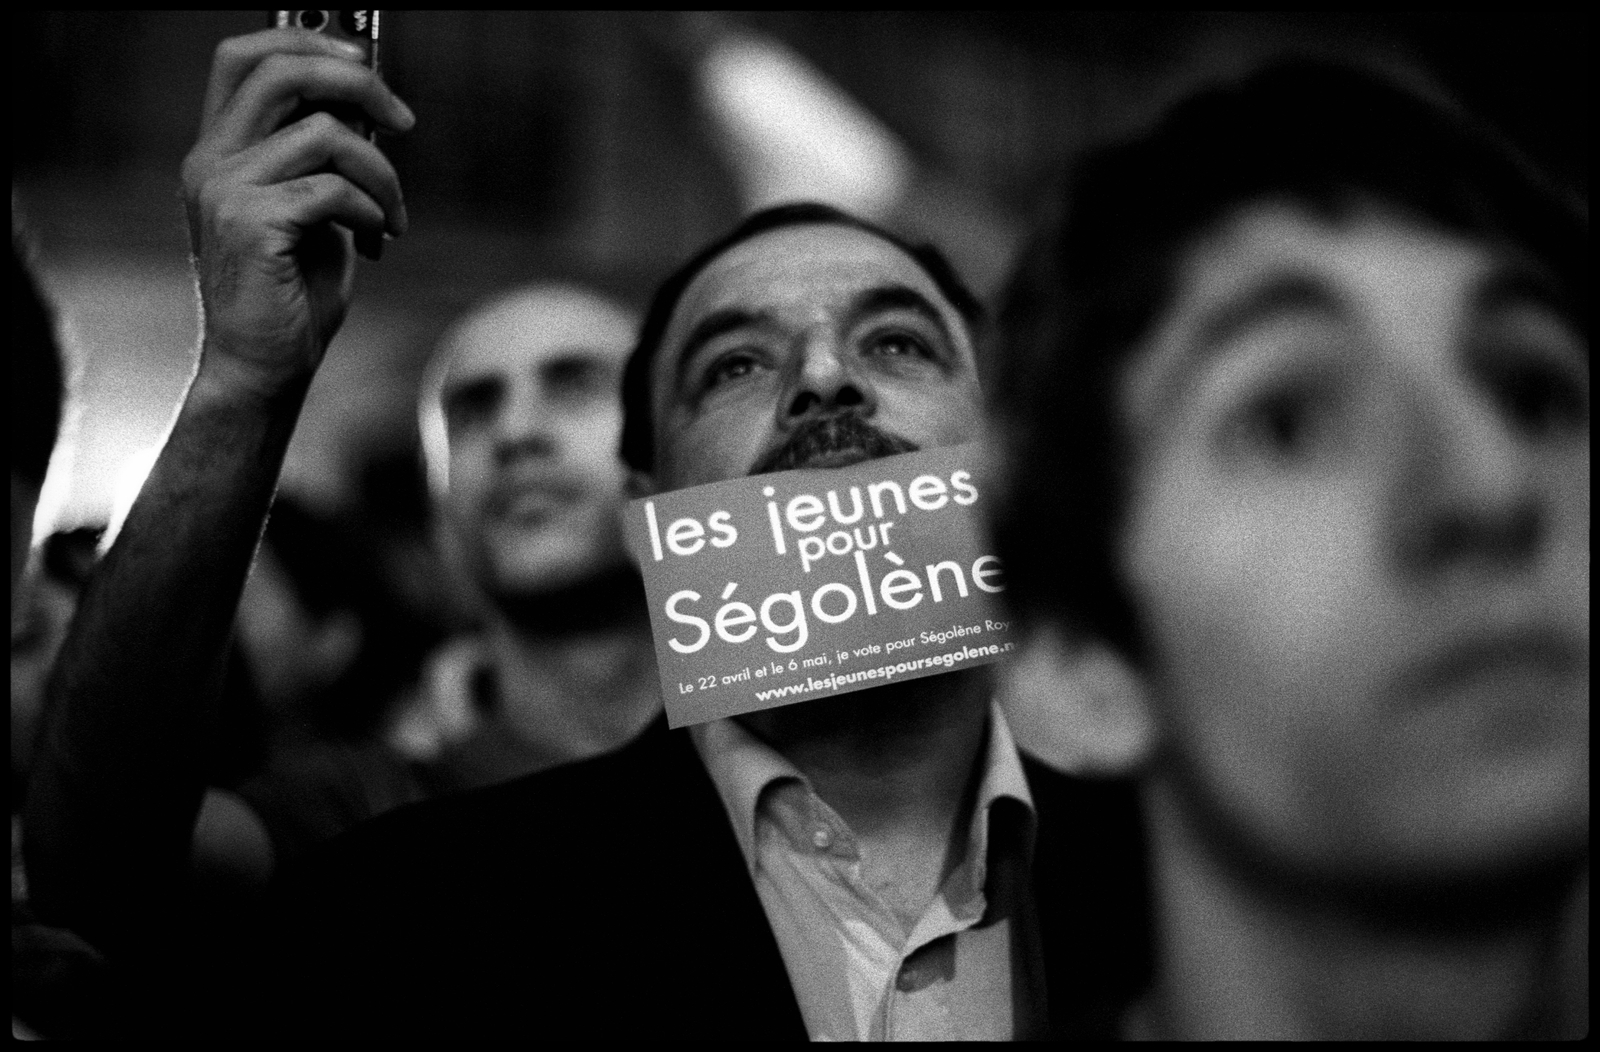 Militants Socialistes et supporters de Ségolène Royal, attendent les résultats du premier tours de l'élection présidentielle le 22 avril 2007 devant le siège du PS, rue de Soférino à Paris.